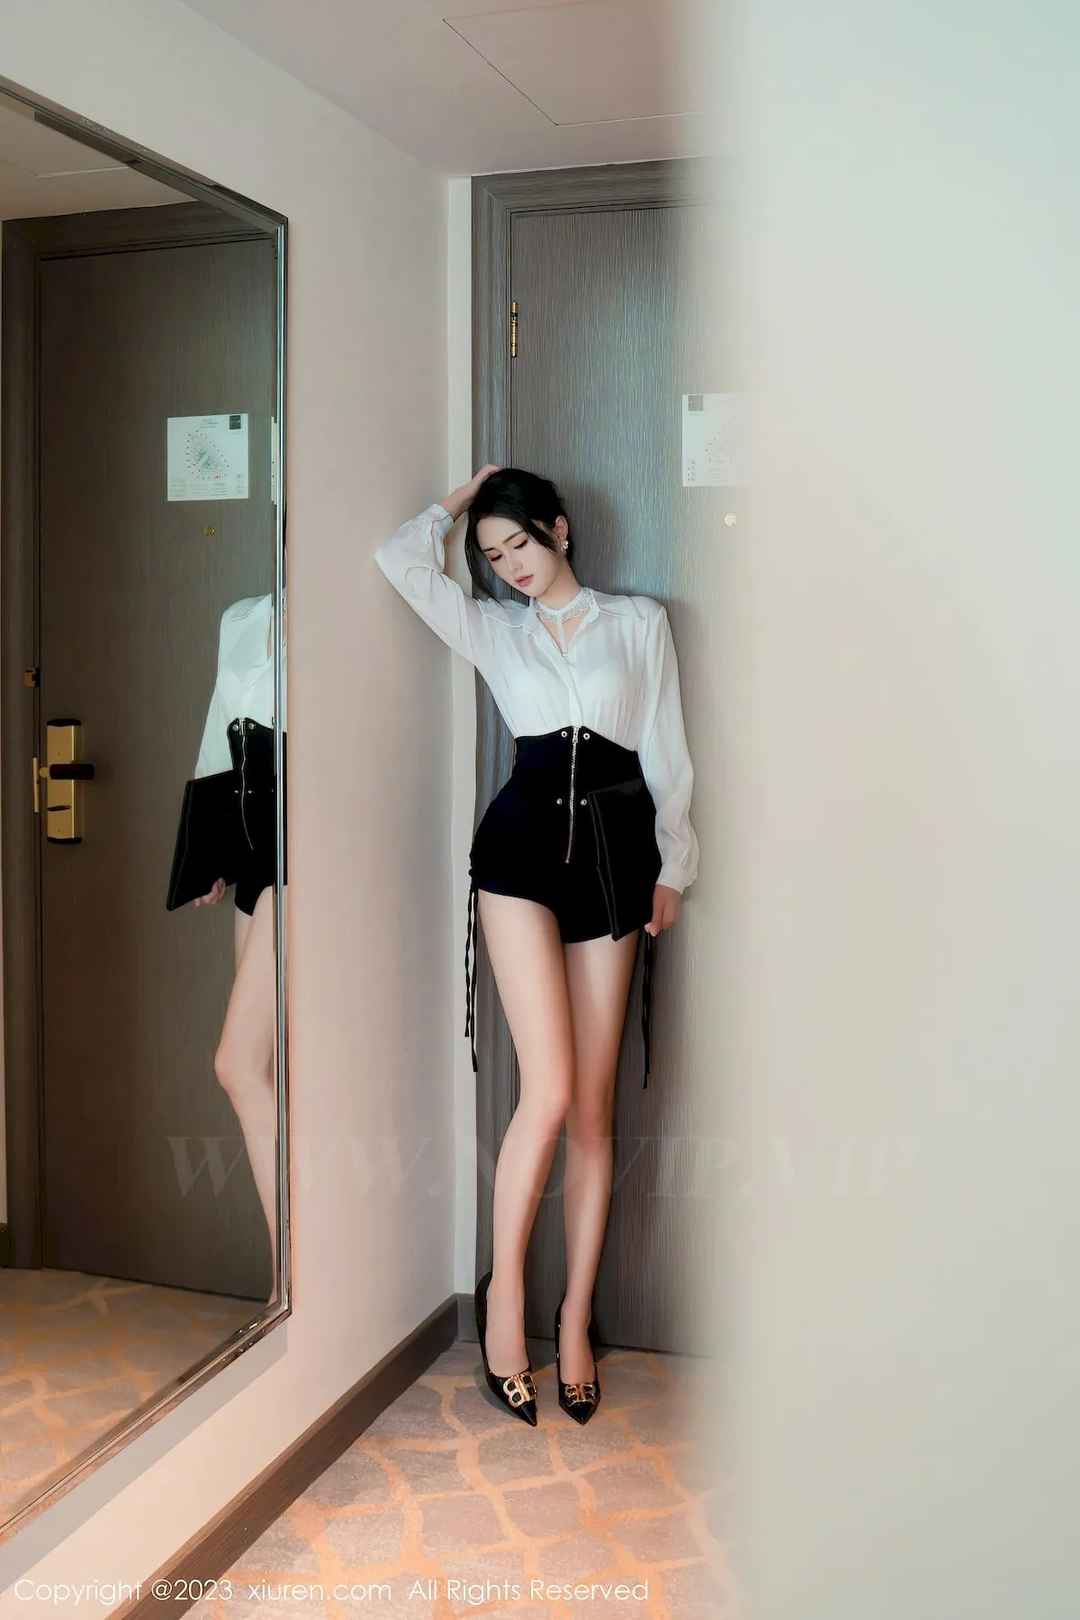 艾希儿优美的身材线条白色上衣搭配黑色短裙性感写真